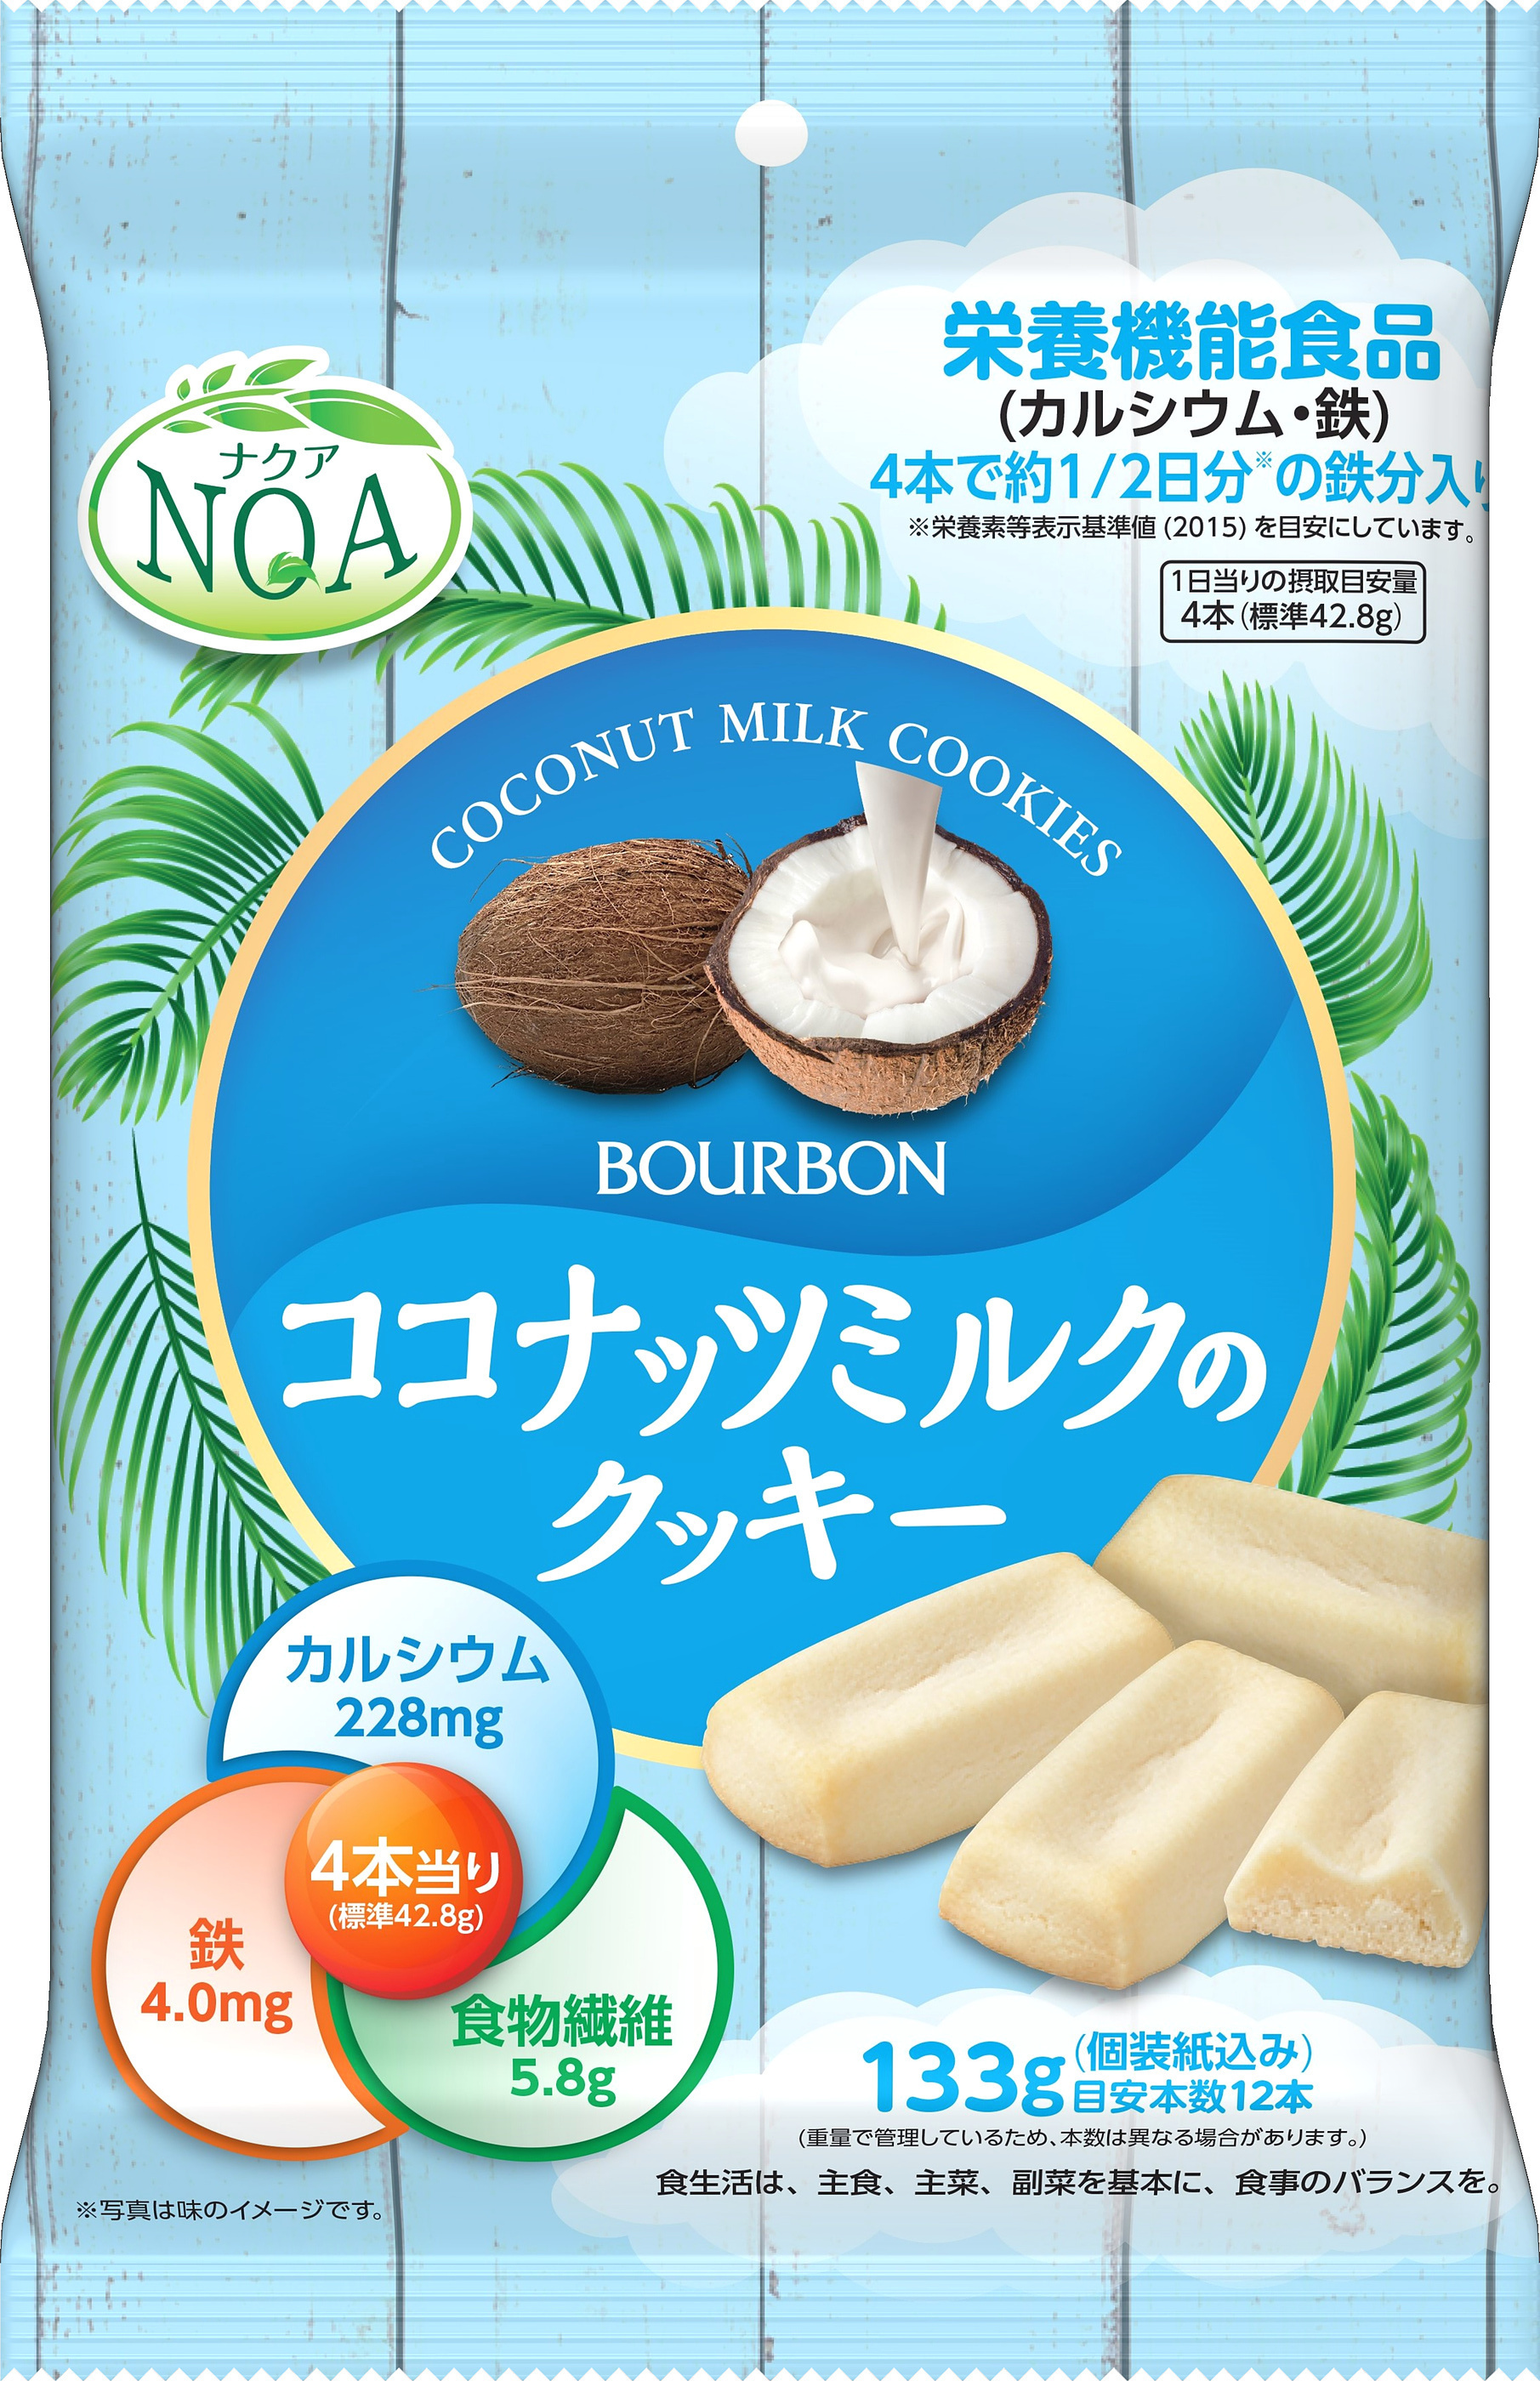 SALE／96%OFF】 スローバー 濃厚ココナッツミルク 41g ブルボン 返品種別B108円 sarozambia.com